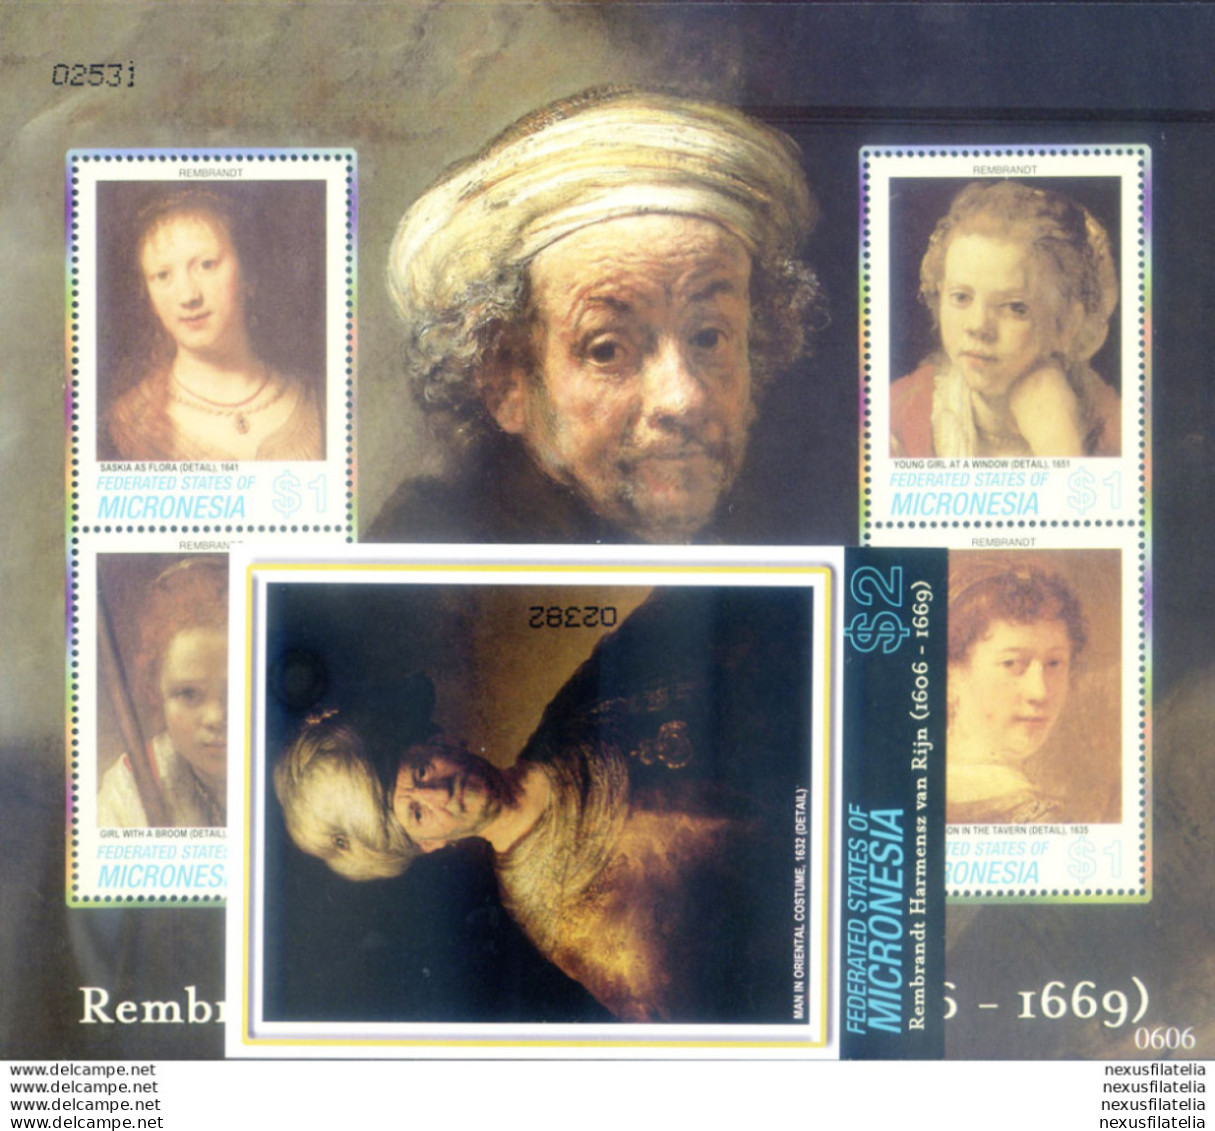 Rembrandt 2006. - Micronesia